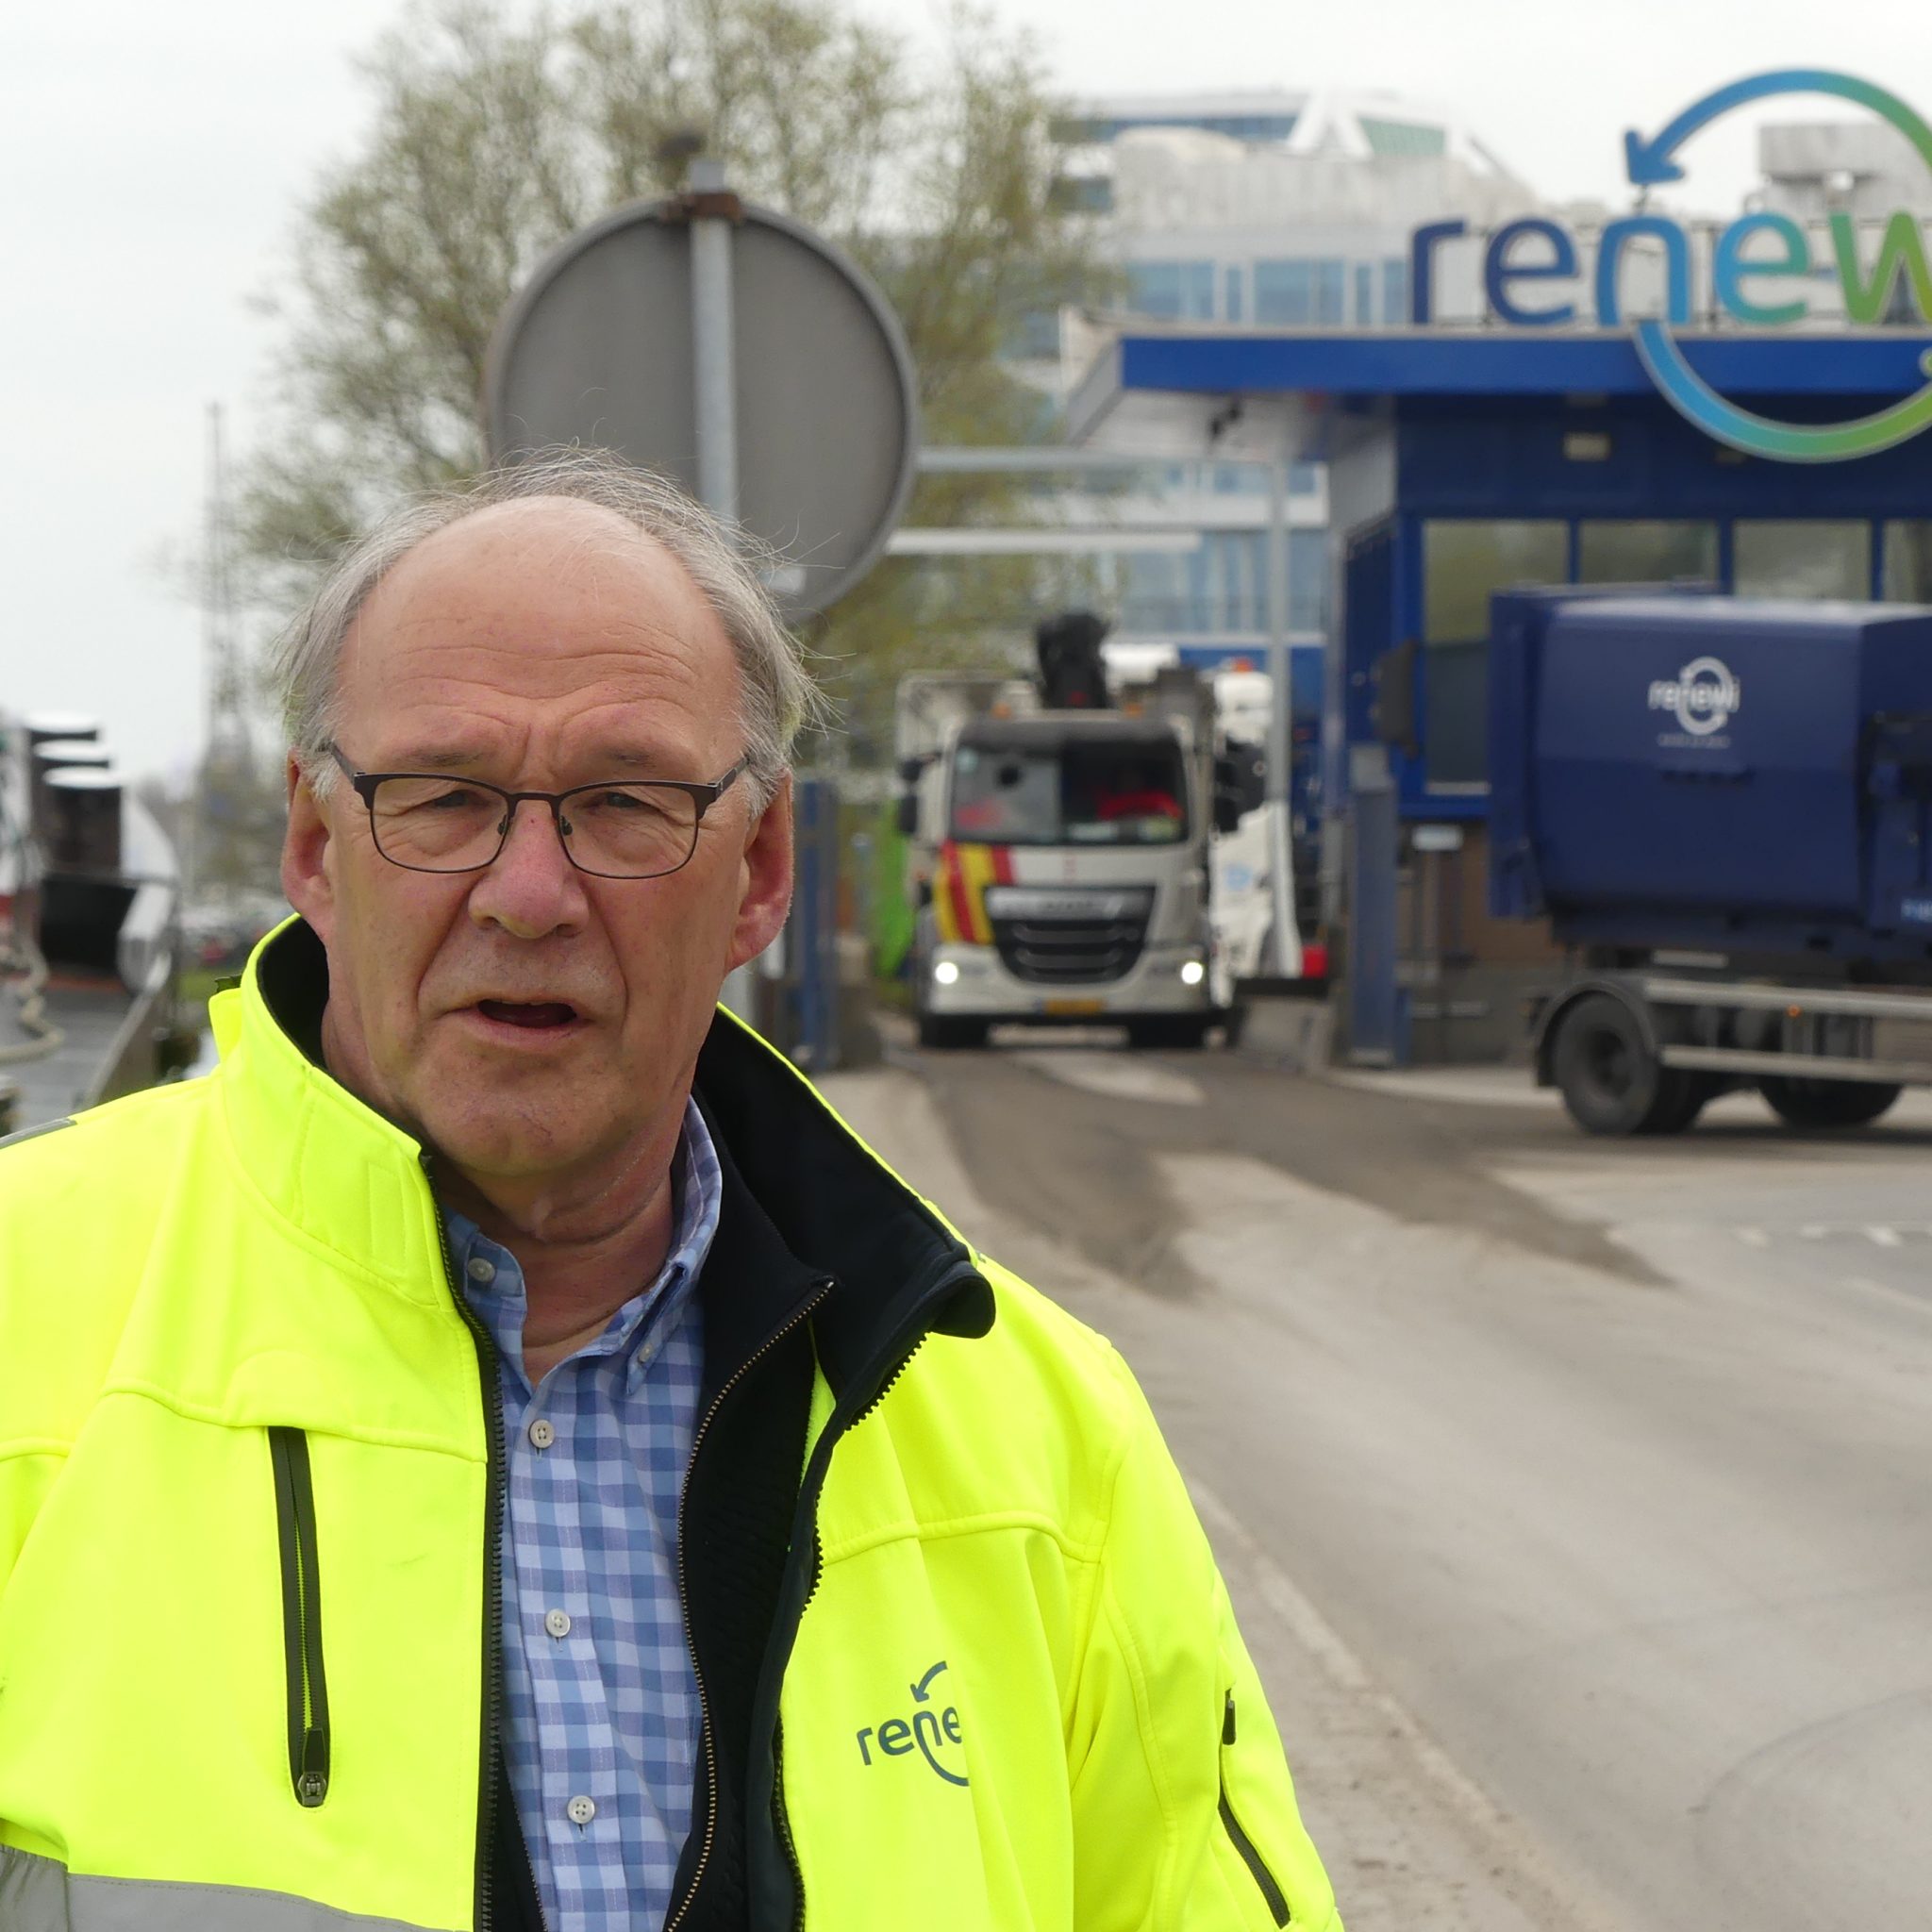 Gerard Veldhuijzen voor de Renewi-locatie aan de Nieuwe Hemweg te Amsterdam tussen binnenvaart en wegvervoer. (Foto Heere Heeresma jr.)